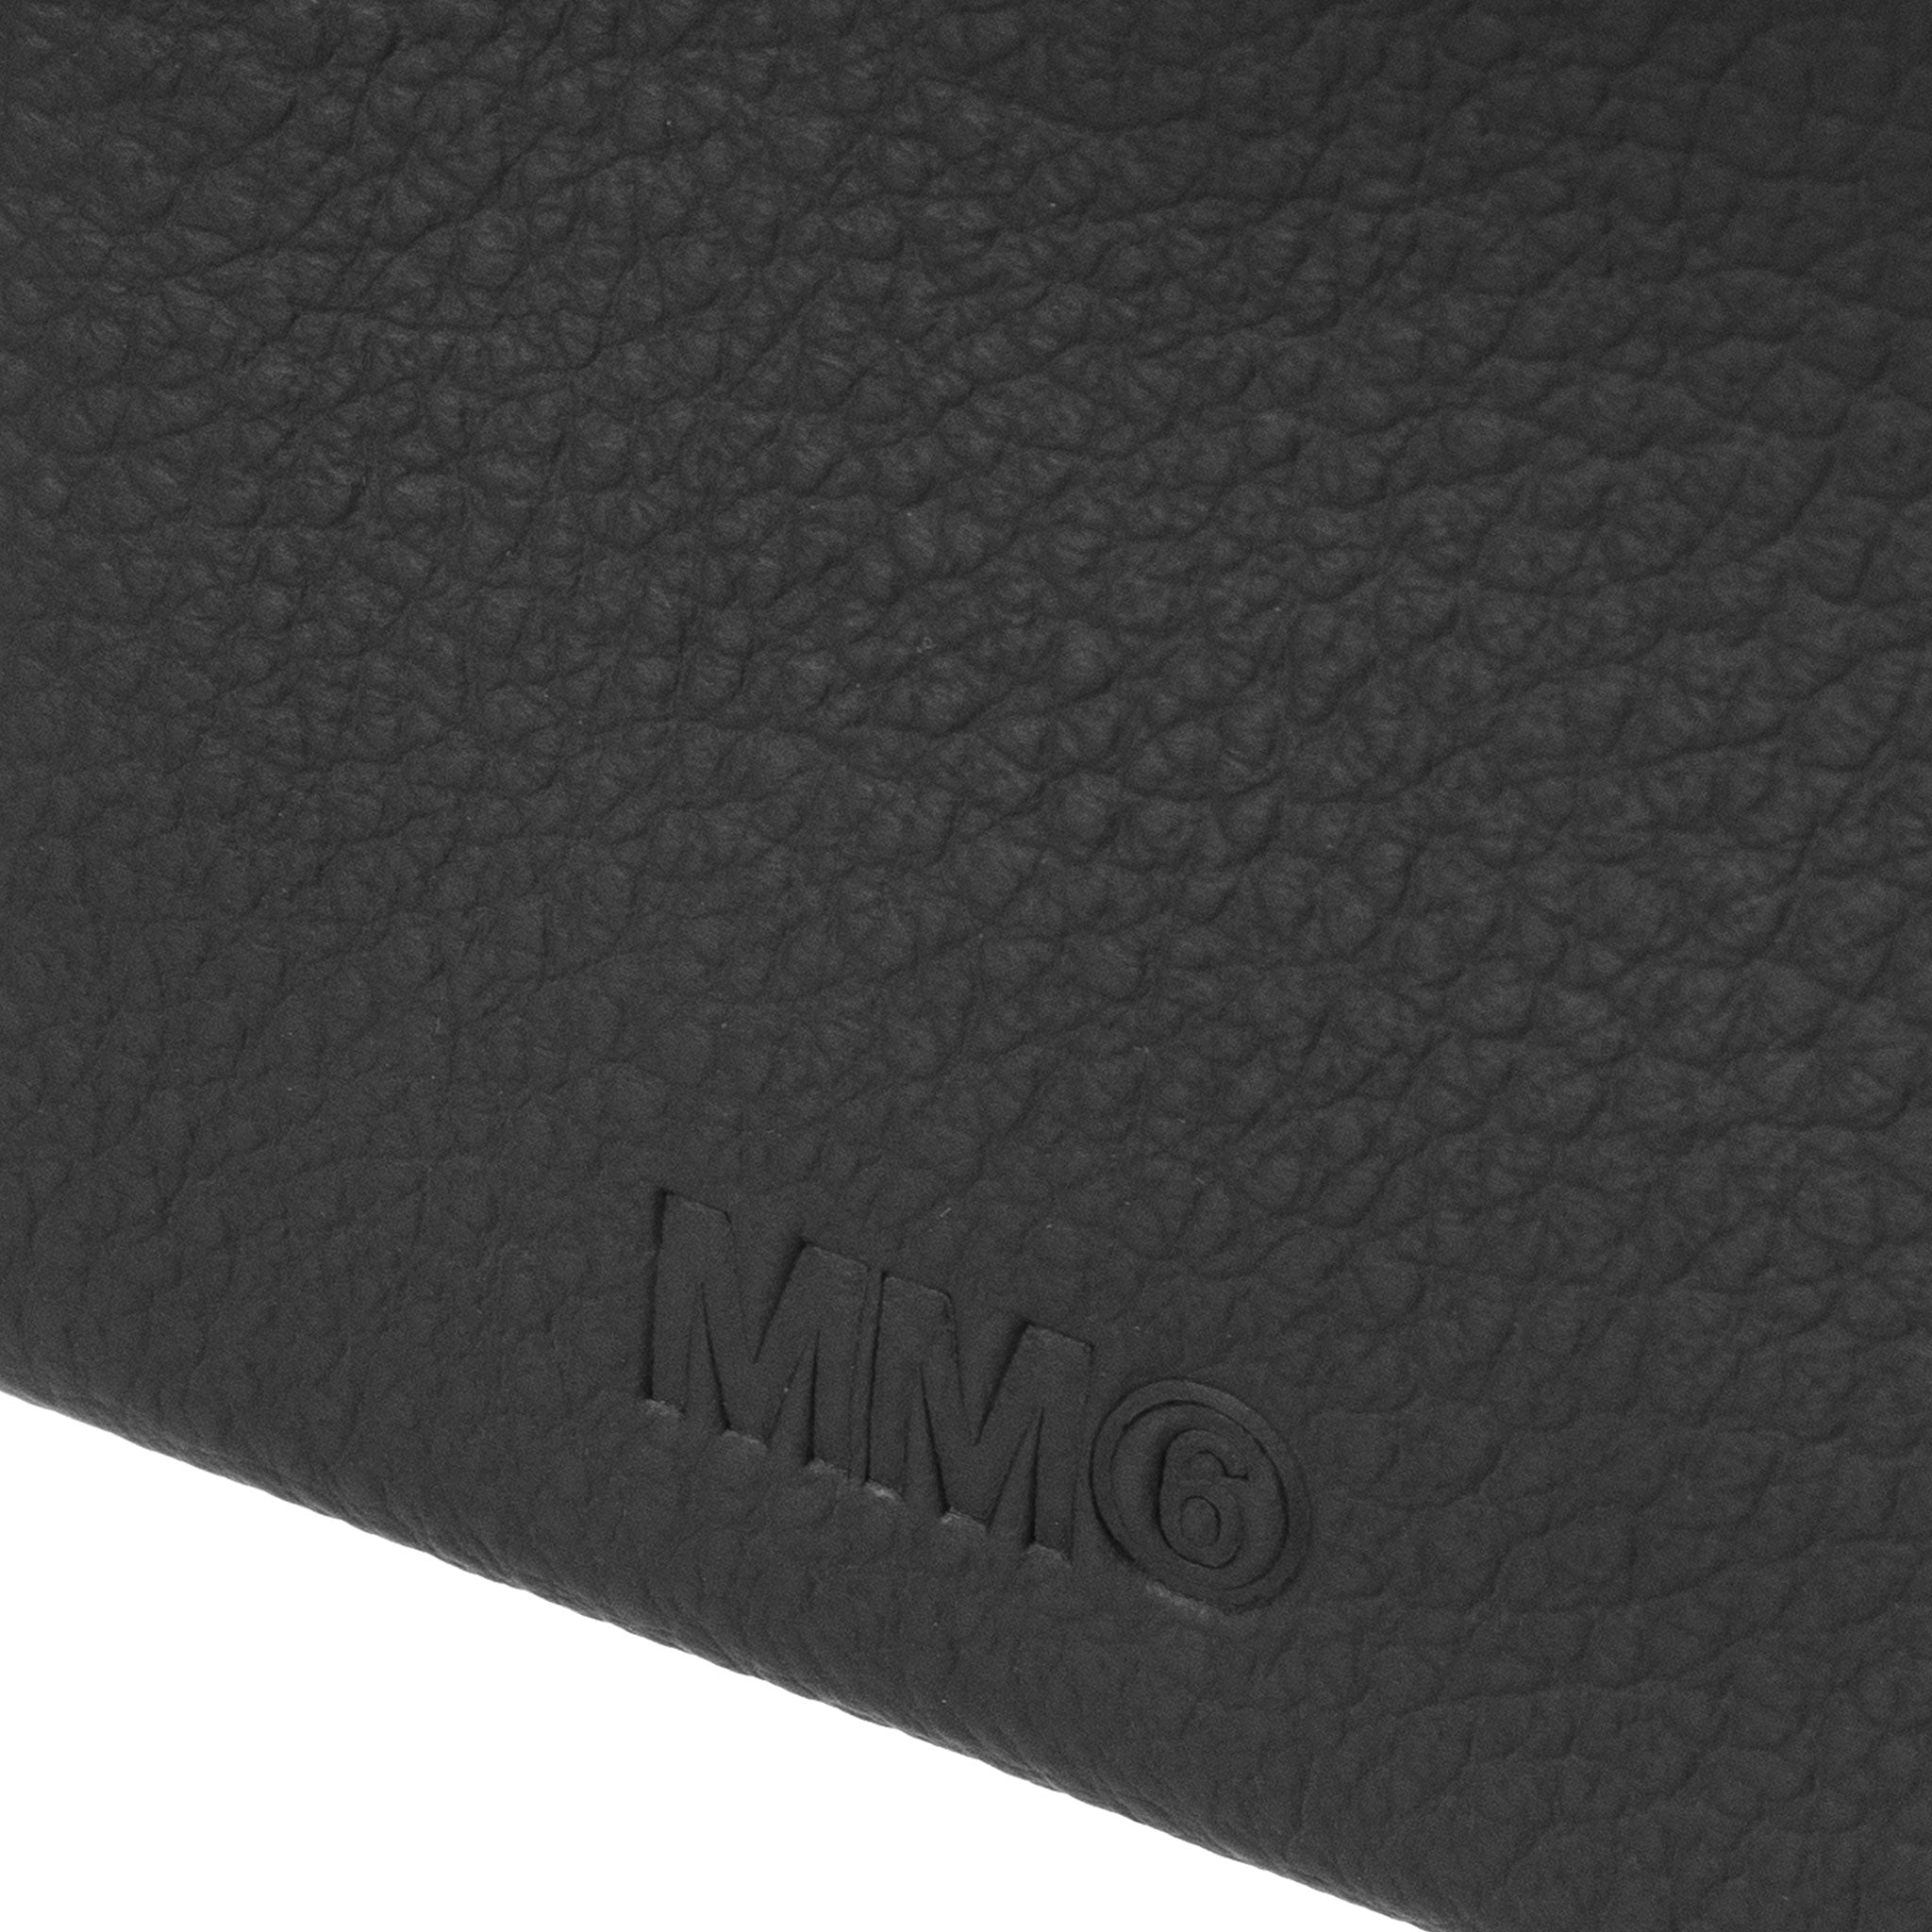 エムエム6 メゾンマルジェラ MM6 MAISON MARGIELA 財布 二つ折り財布 ブラック LOGO FLAP WALLET  SA5UI0001 P4535 H9095 BLACK